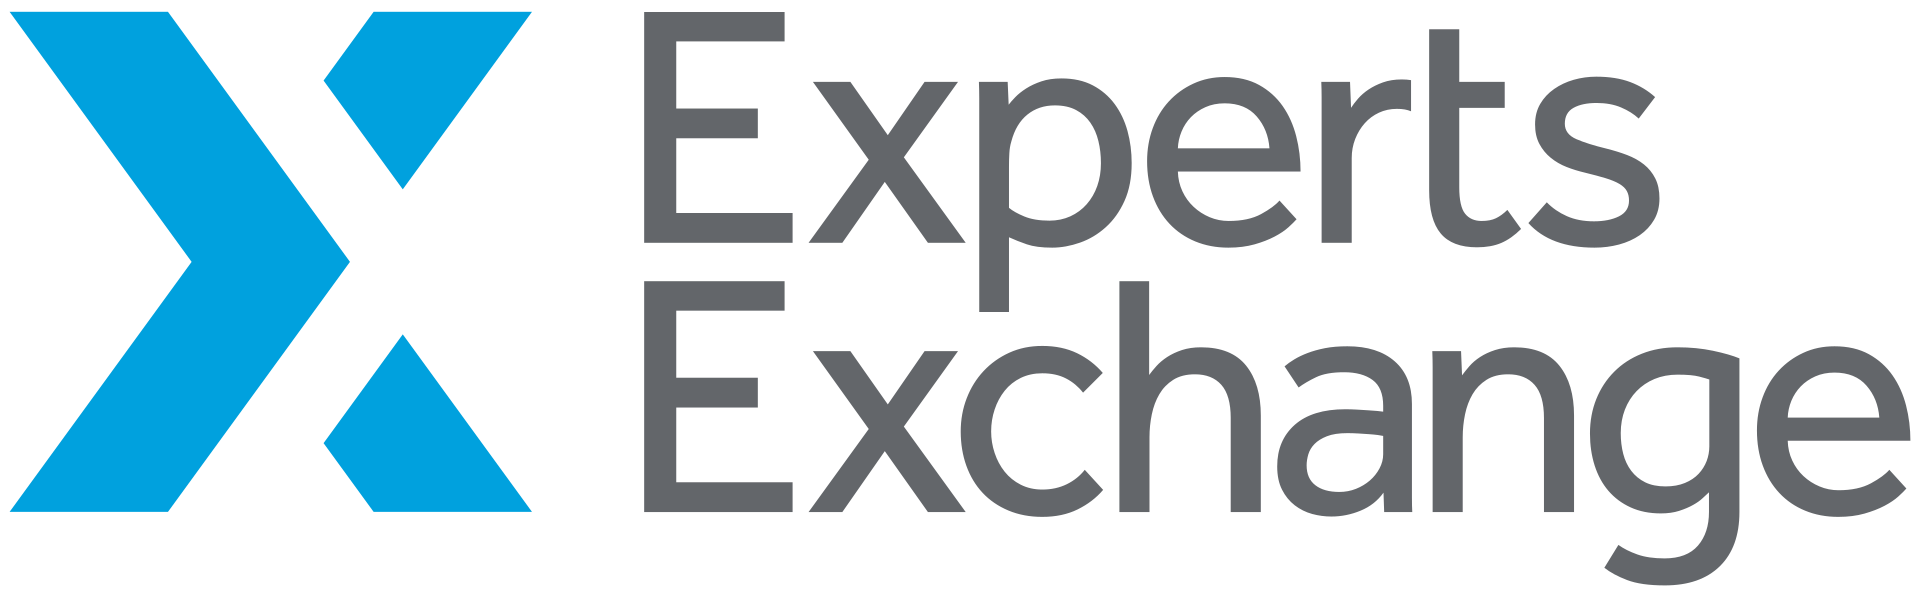 Experts Exchange